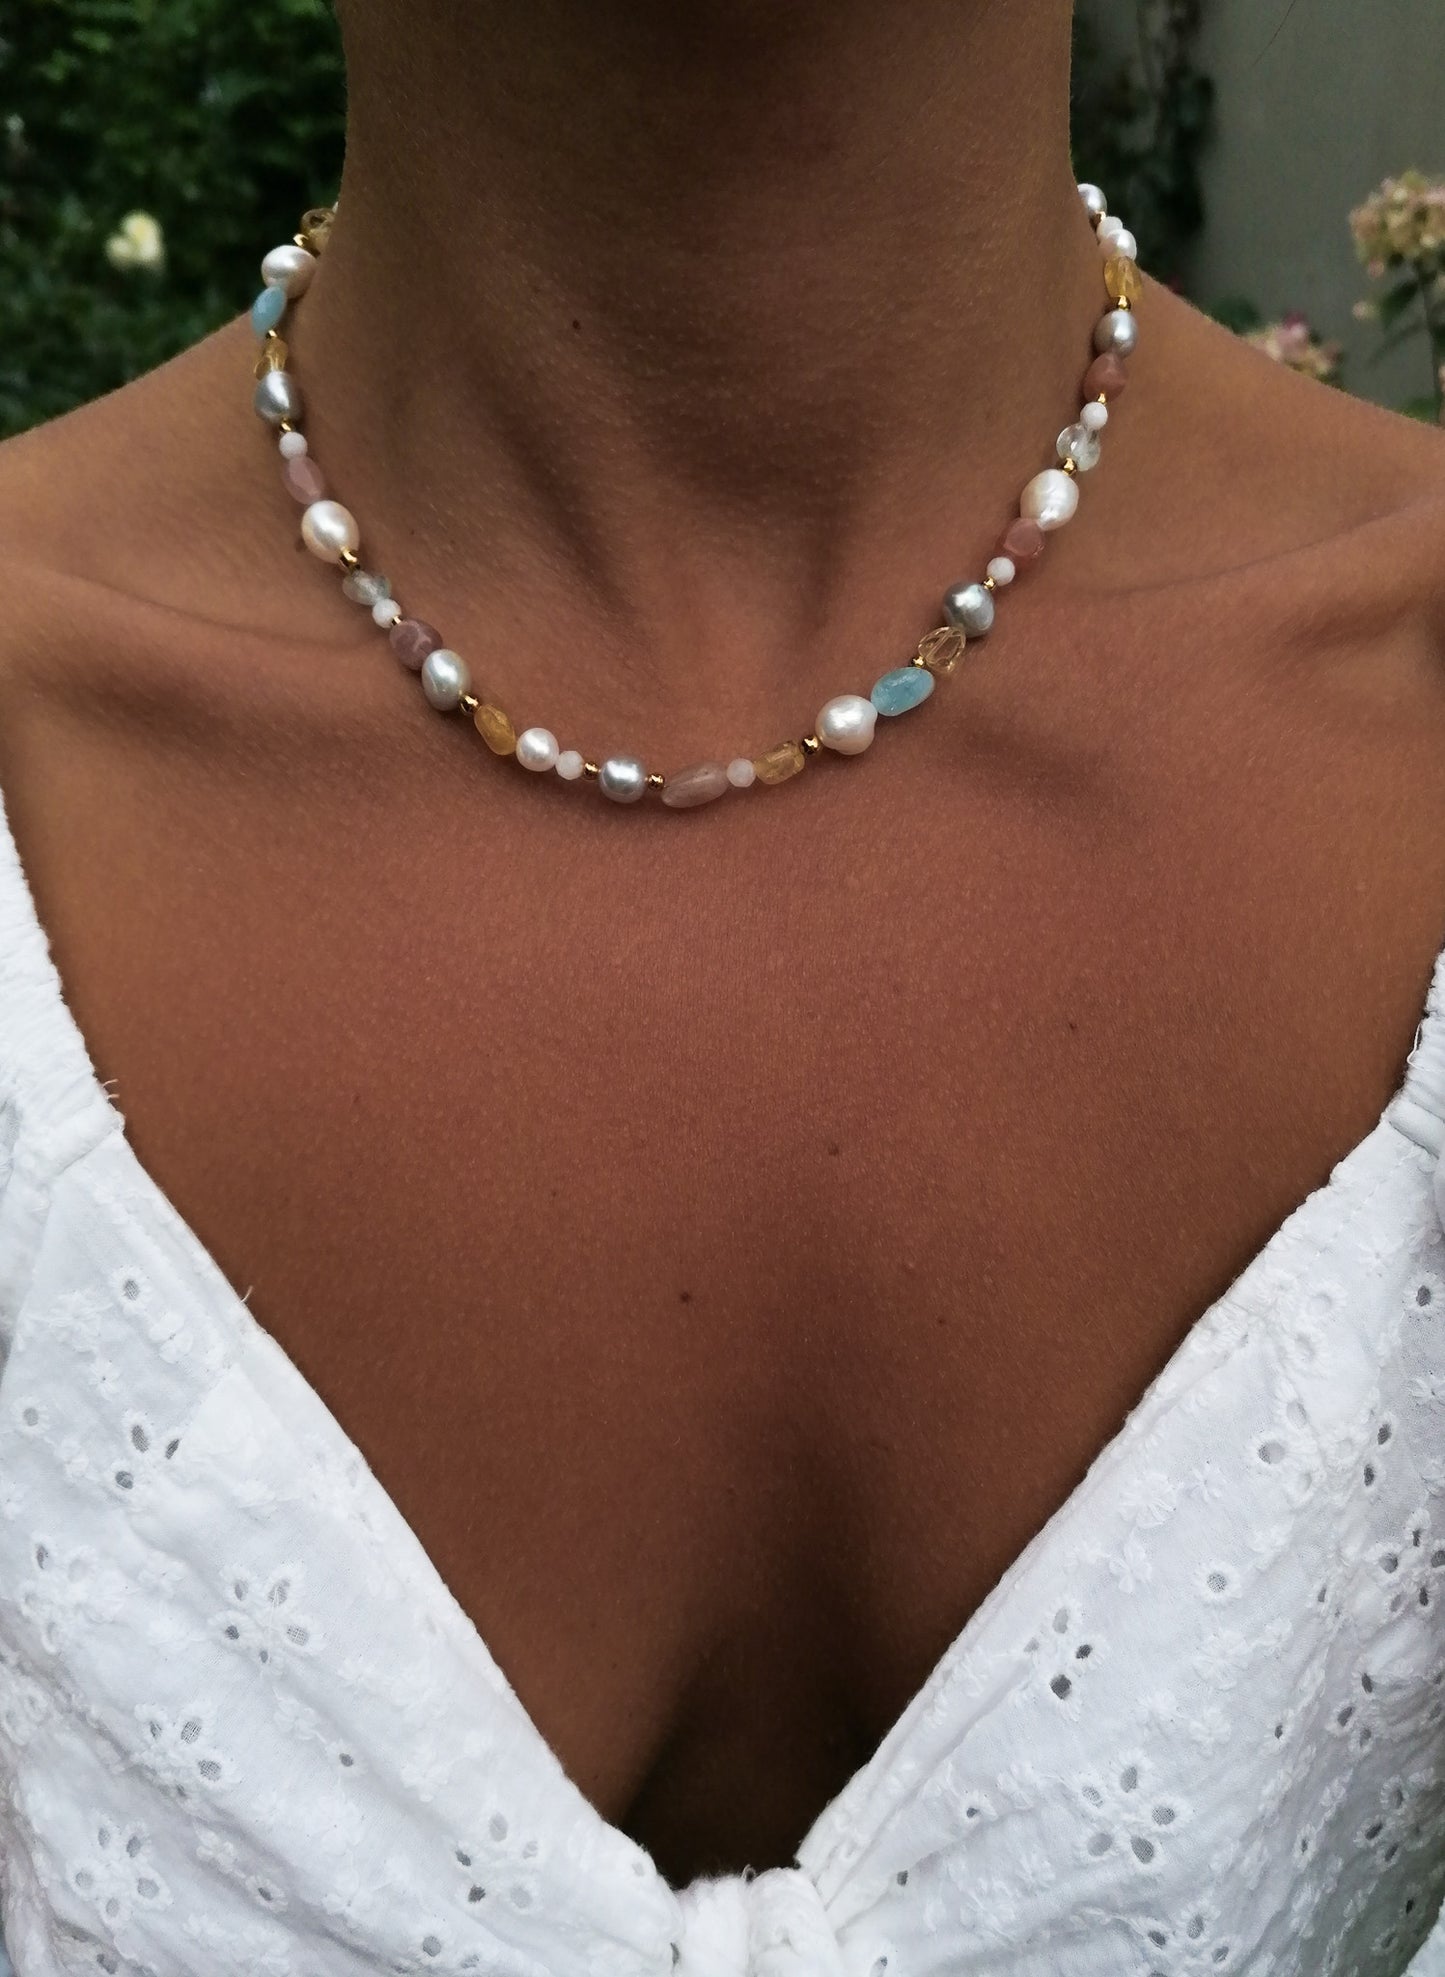 Sydney necklace